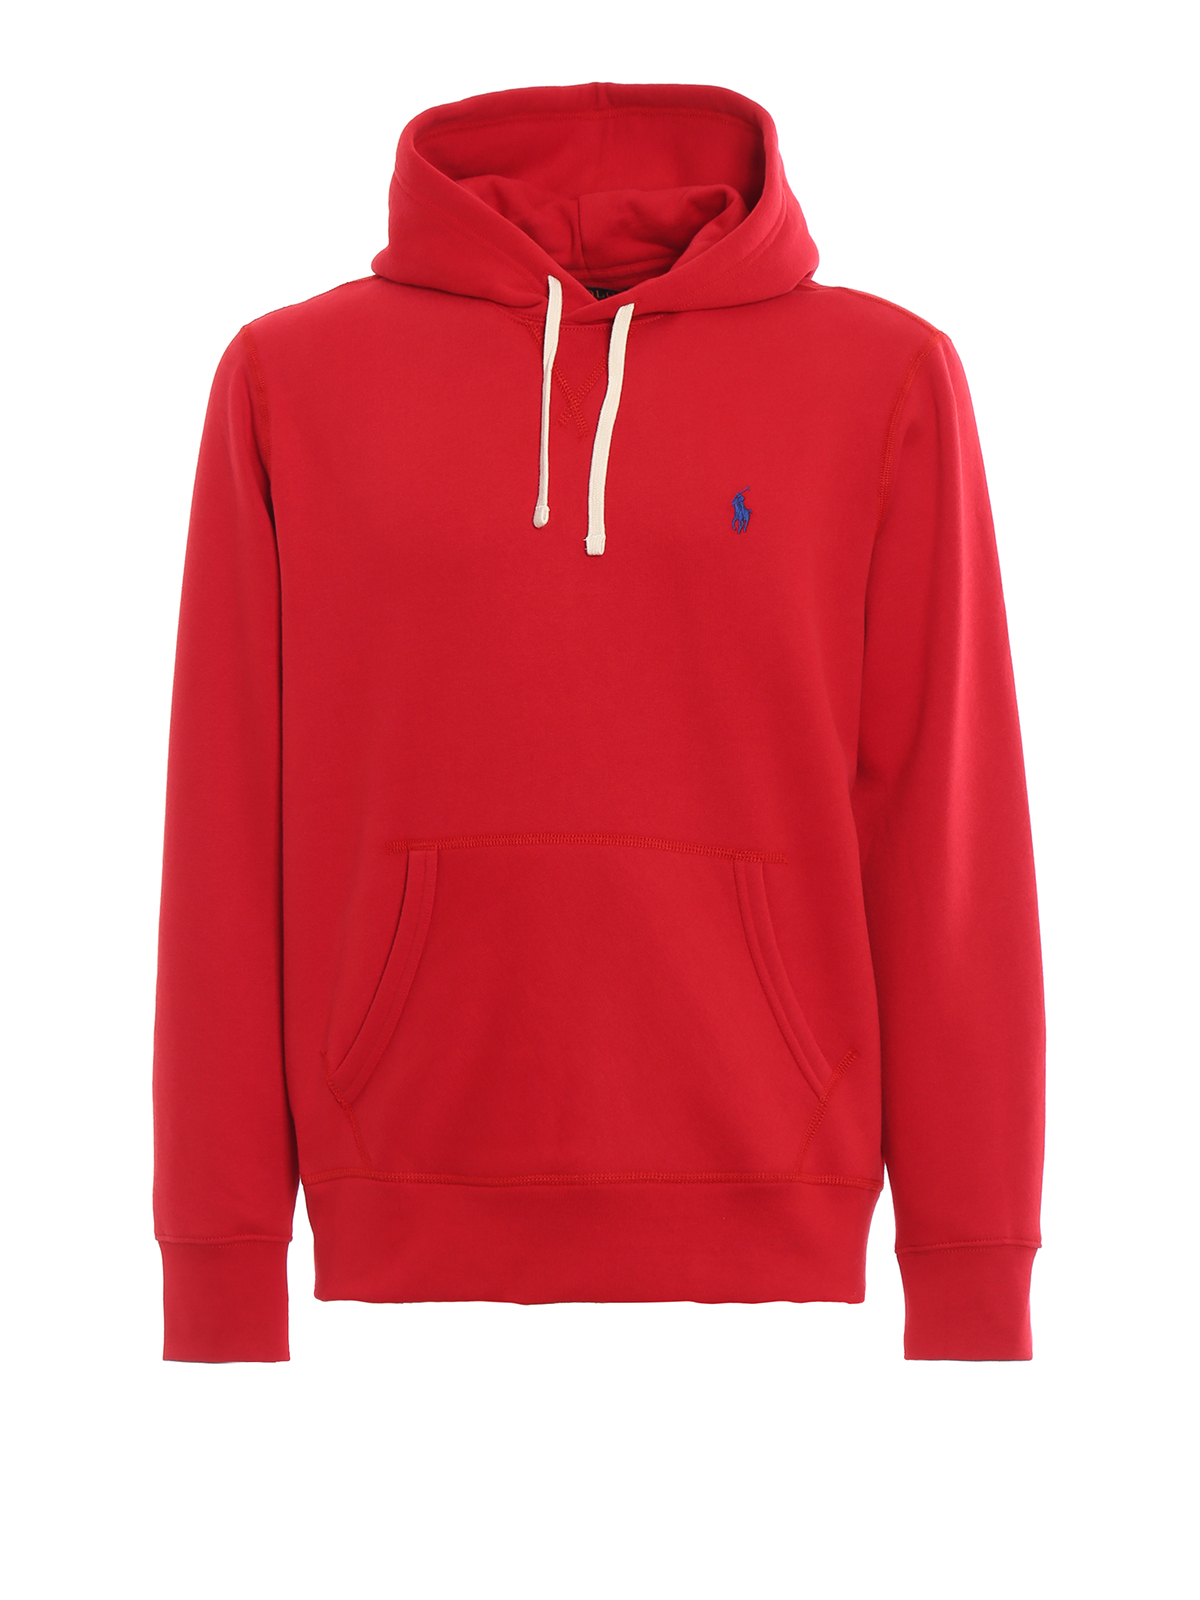 Polo Ralph Lauren - Red fleece hoodie 